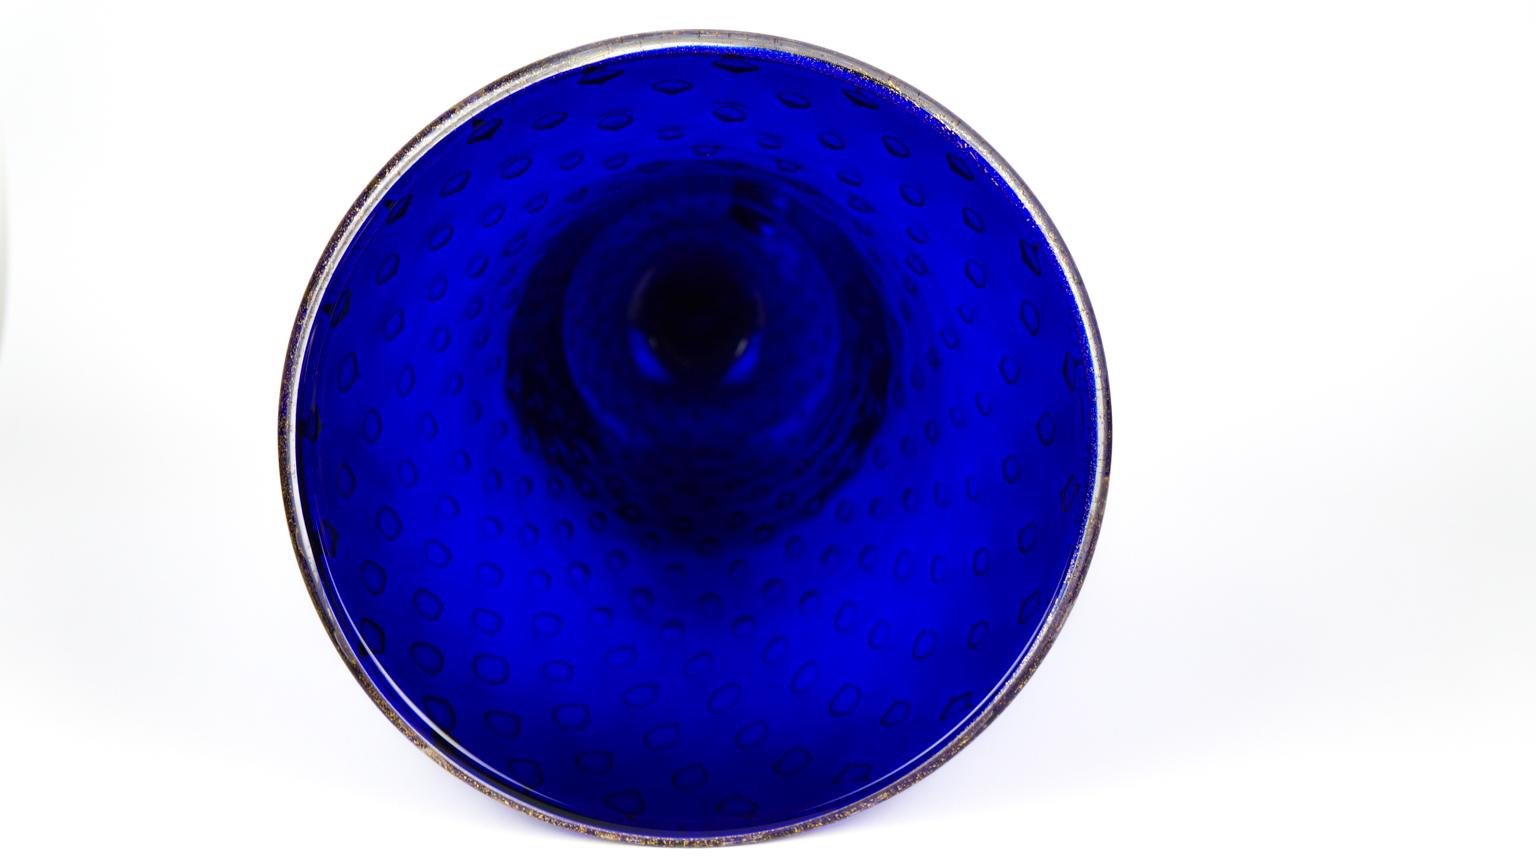 Art Deco Blue Gold Design Italian Art Glass Vase by Stefano Mattiello For Sale 8